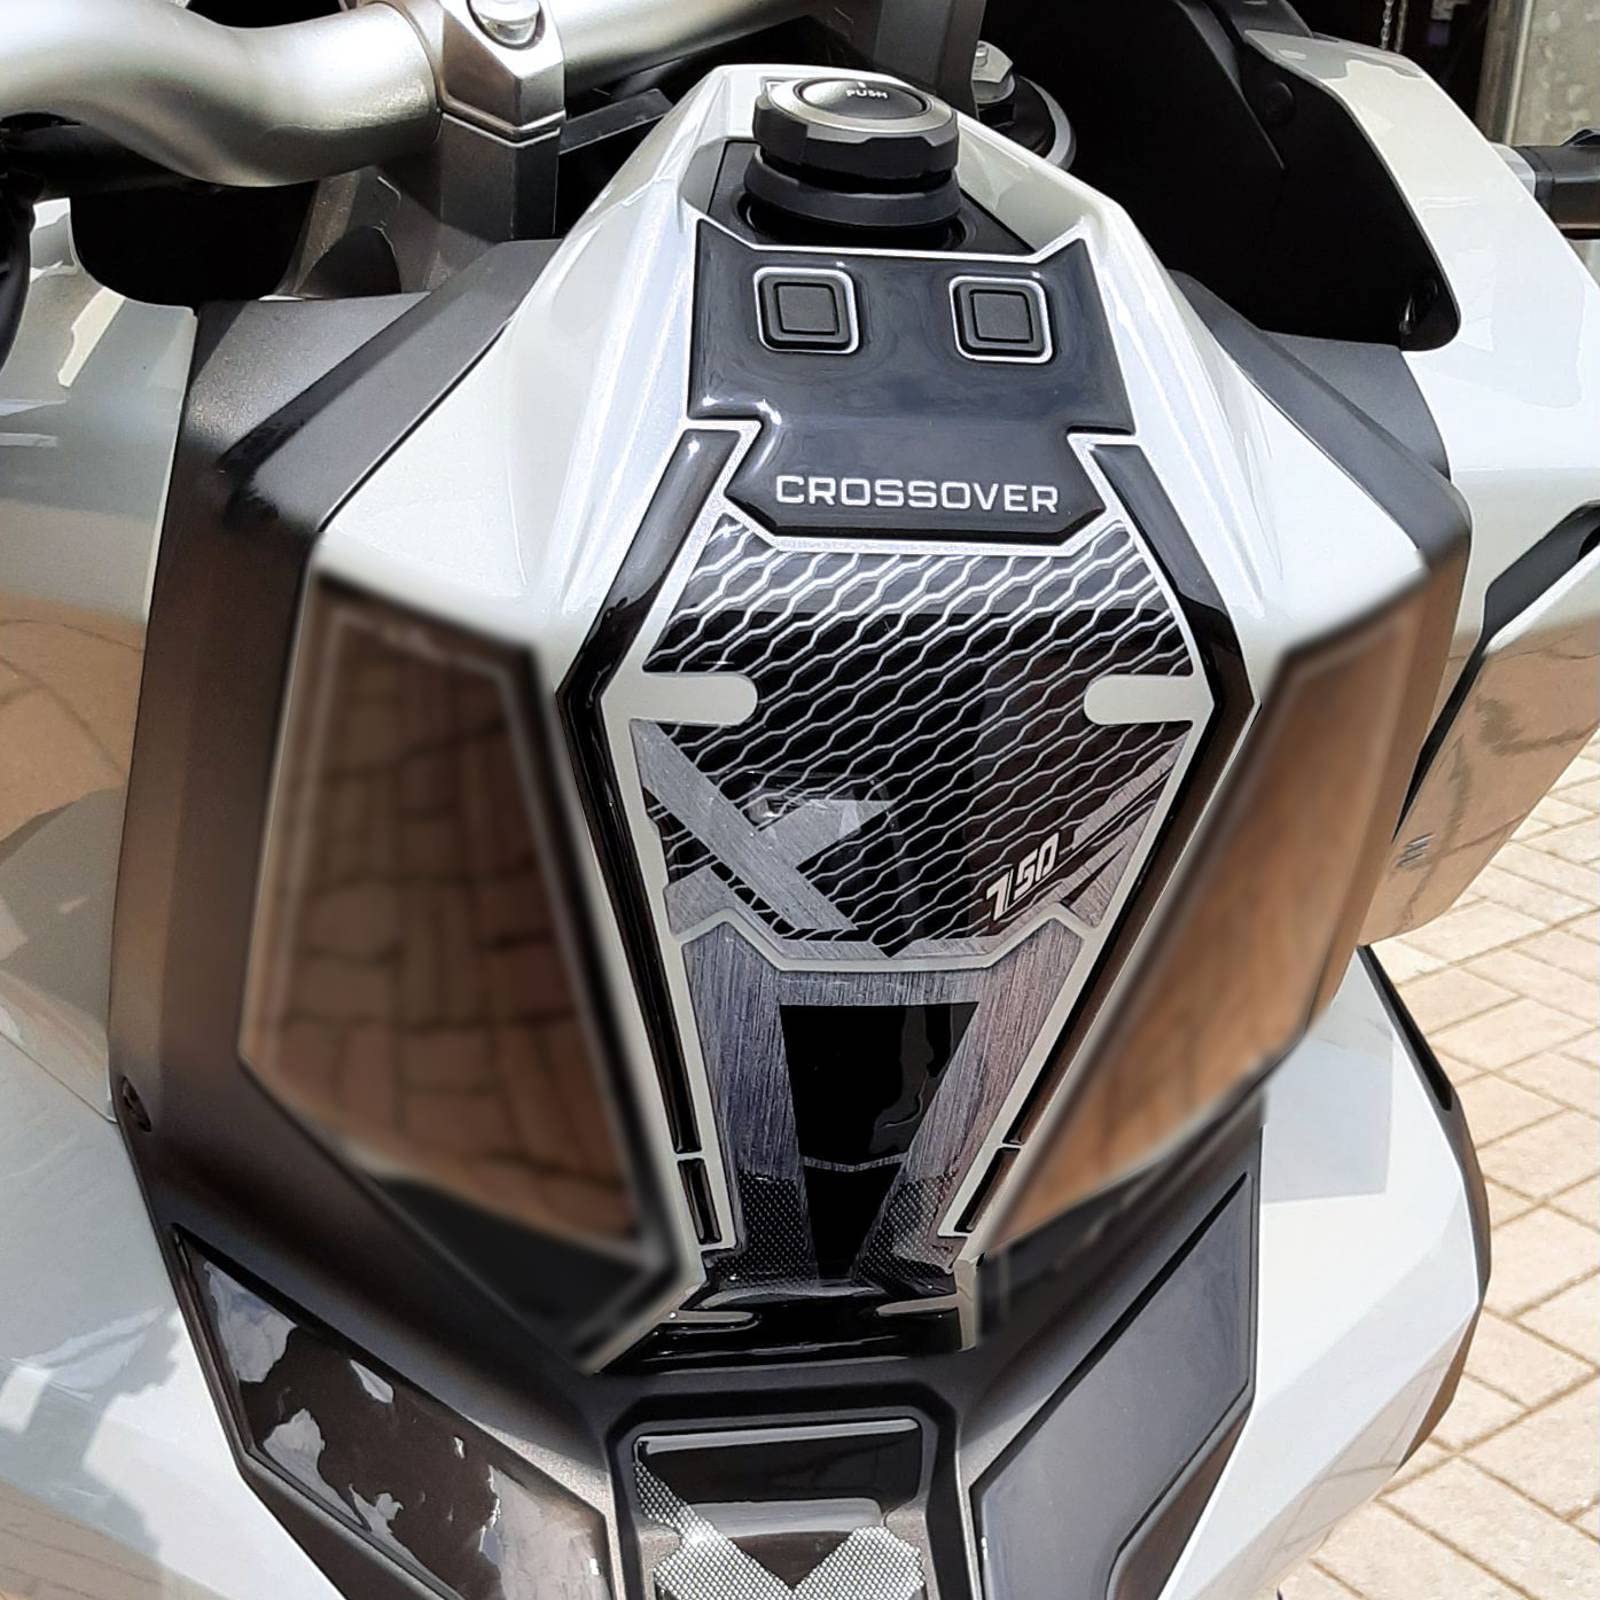 Resin Bike Aufkleber für Motorrad Kompatibel mit Honda X-ADV 750 2021. Mittelschutzgitterschutz und Zündschutz vor Stößen und Kratzern. 3D-Harzklebstoff – Stickers - Made in Italy von Resin Bike